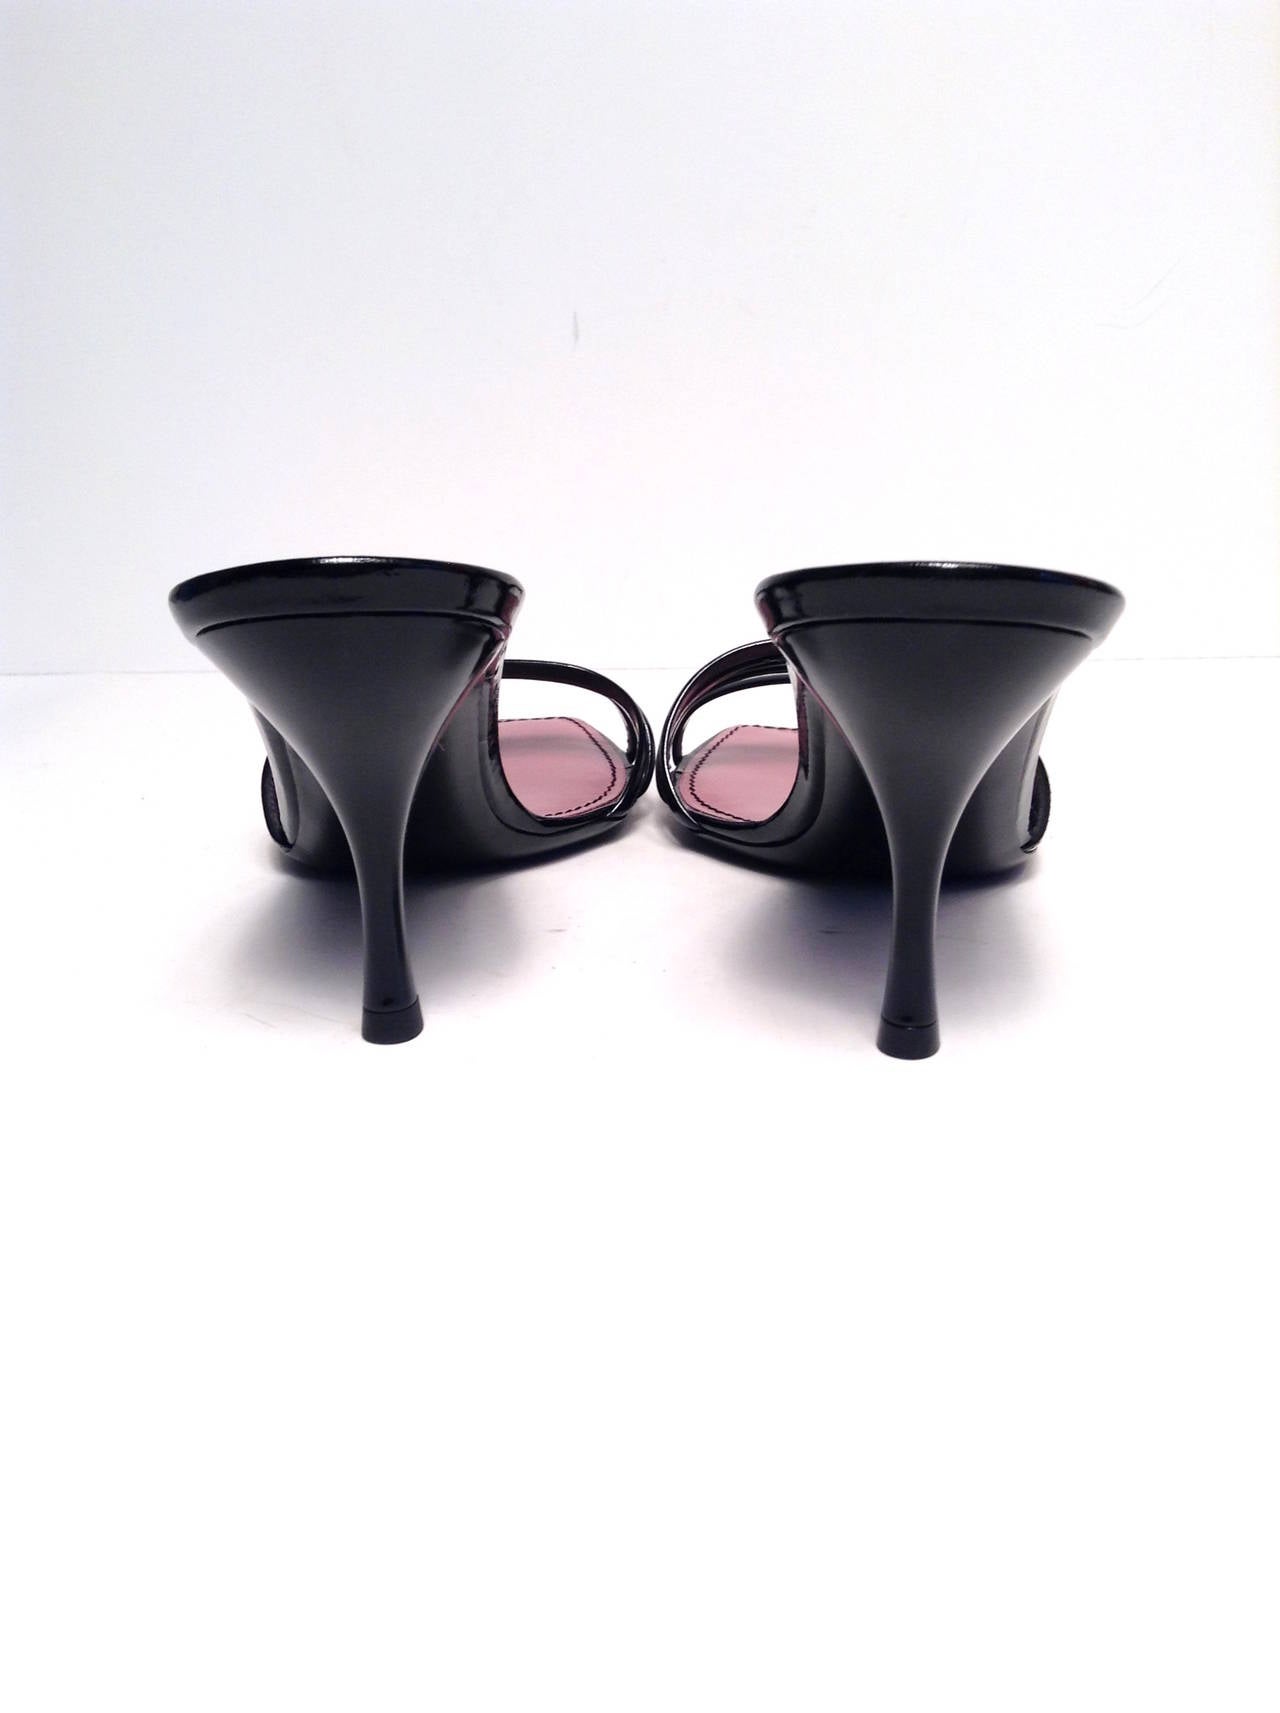 Women's Louis Vuitton Black Patent Cherry Open Toe Mule Size 39/8 For Sale